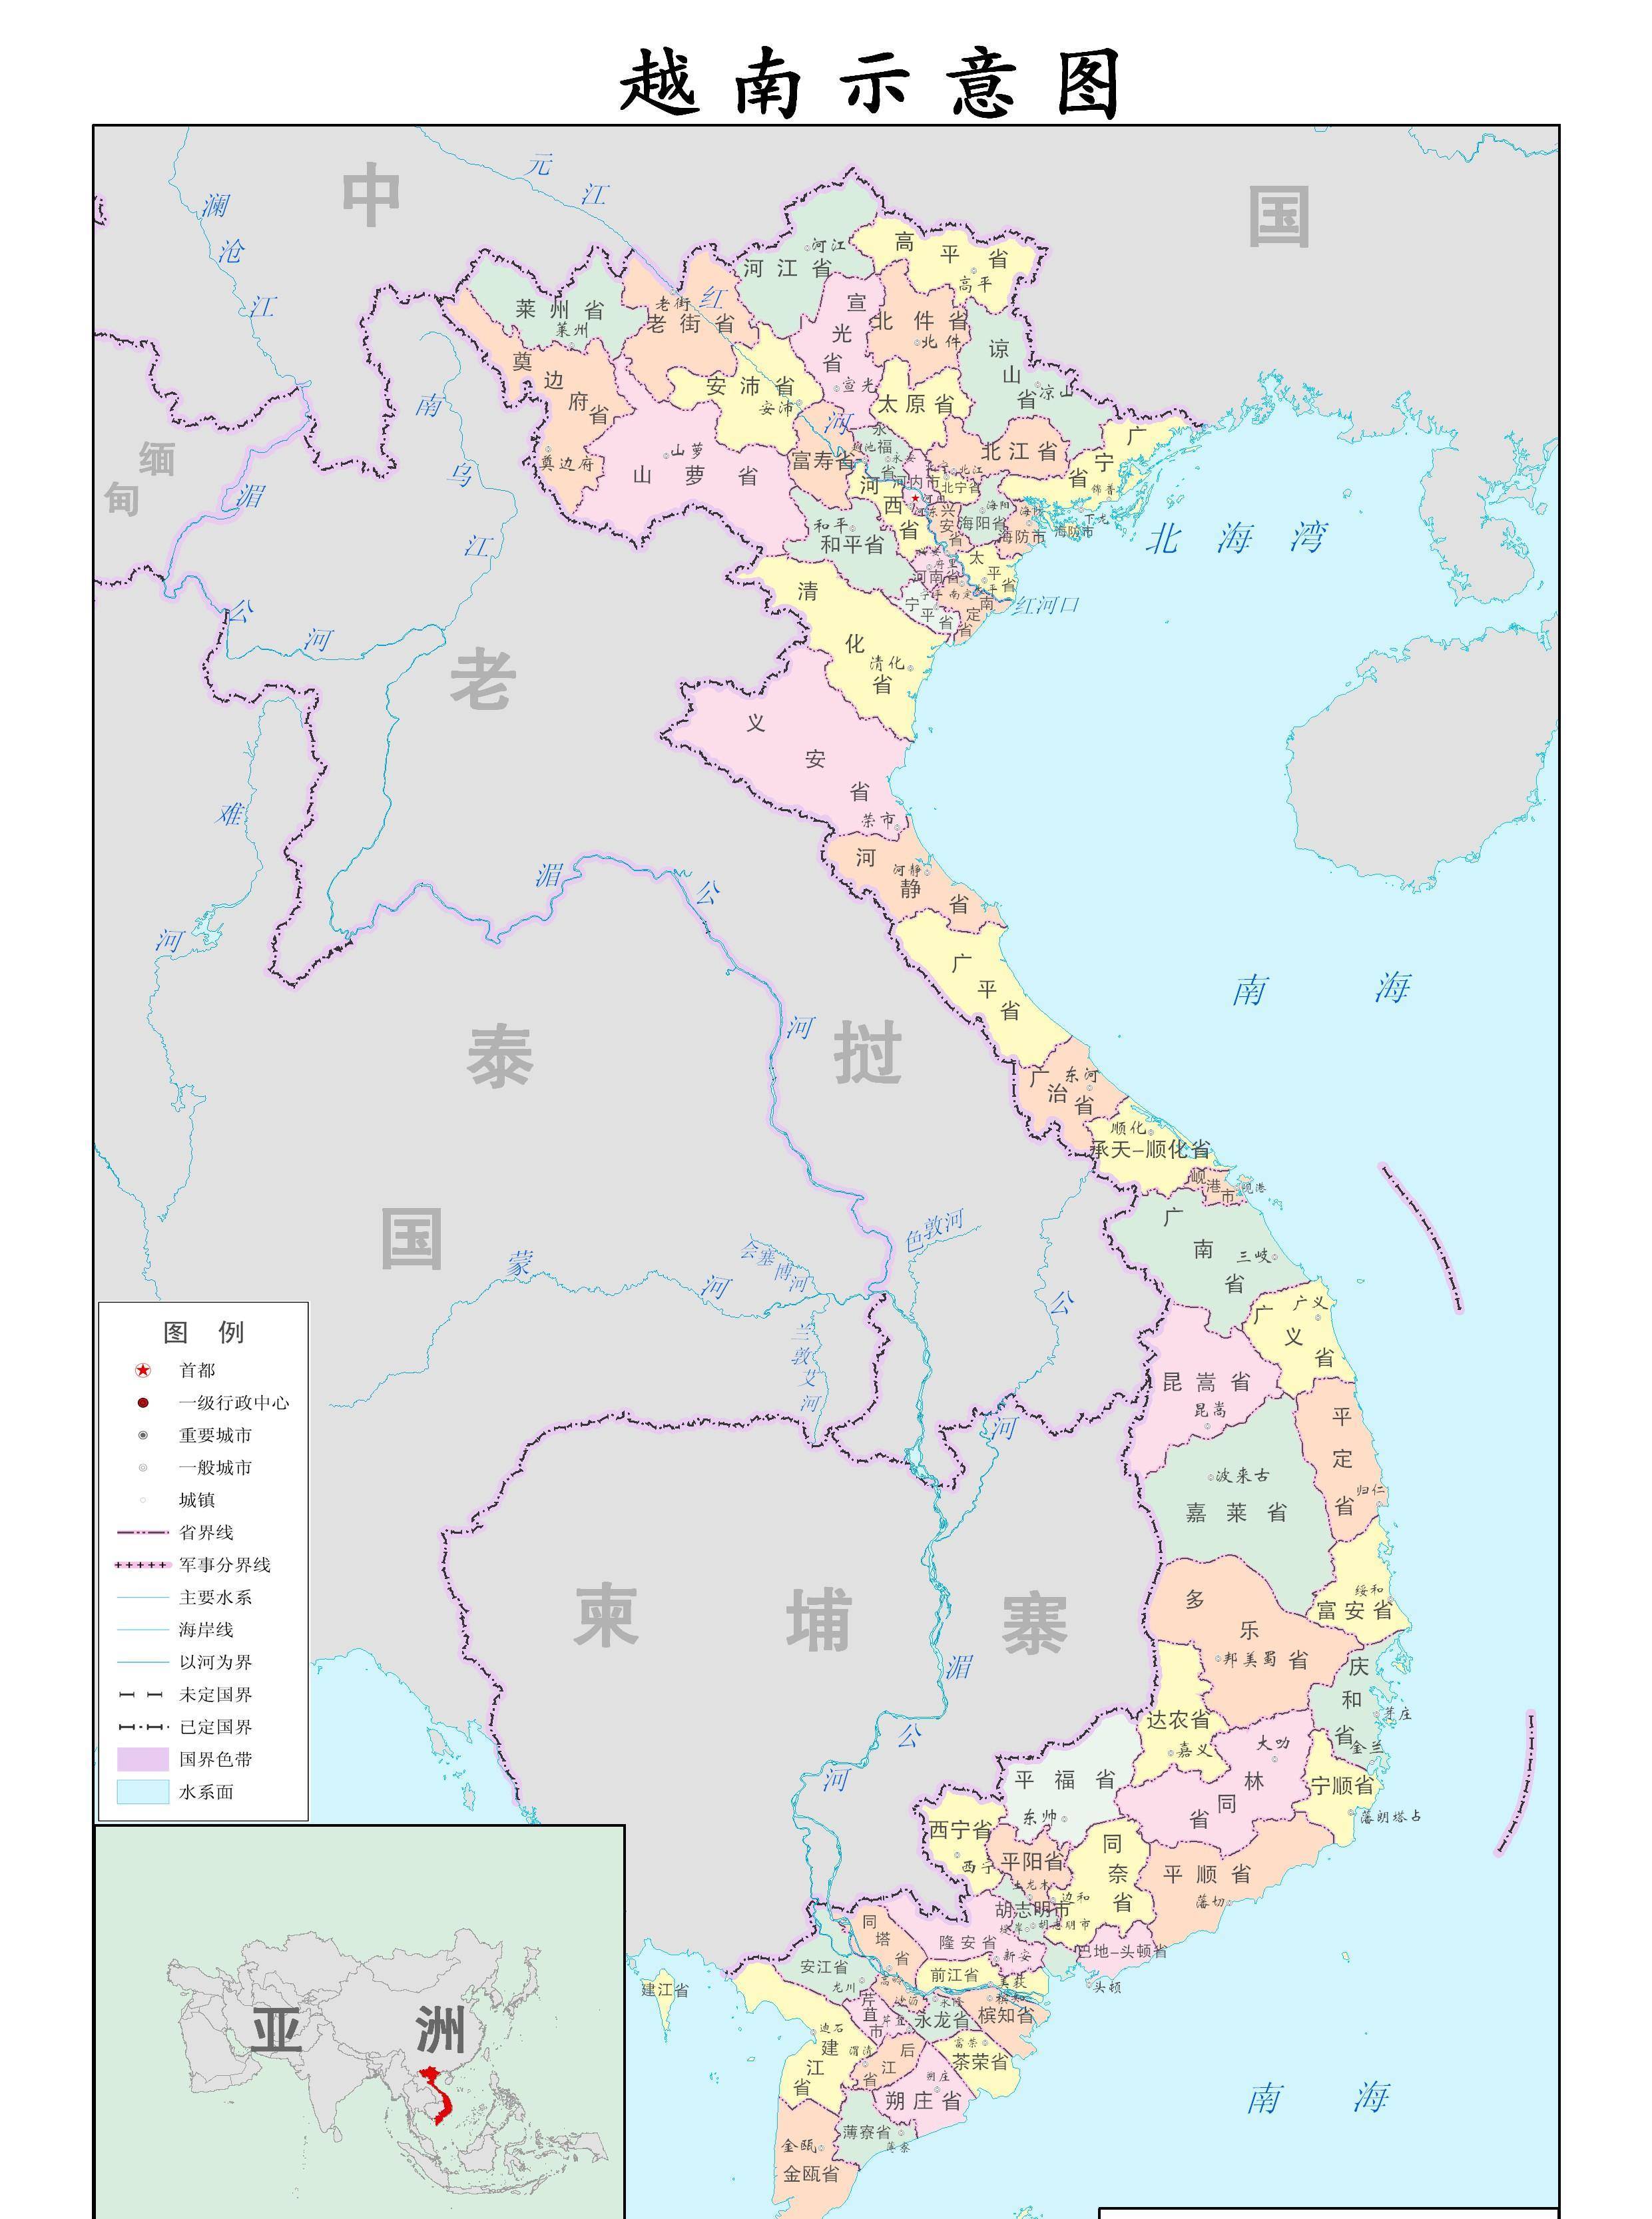 一张表看懂越南与中国行政区划的对应关系:上级行政区差别反而大